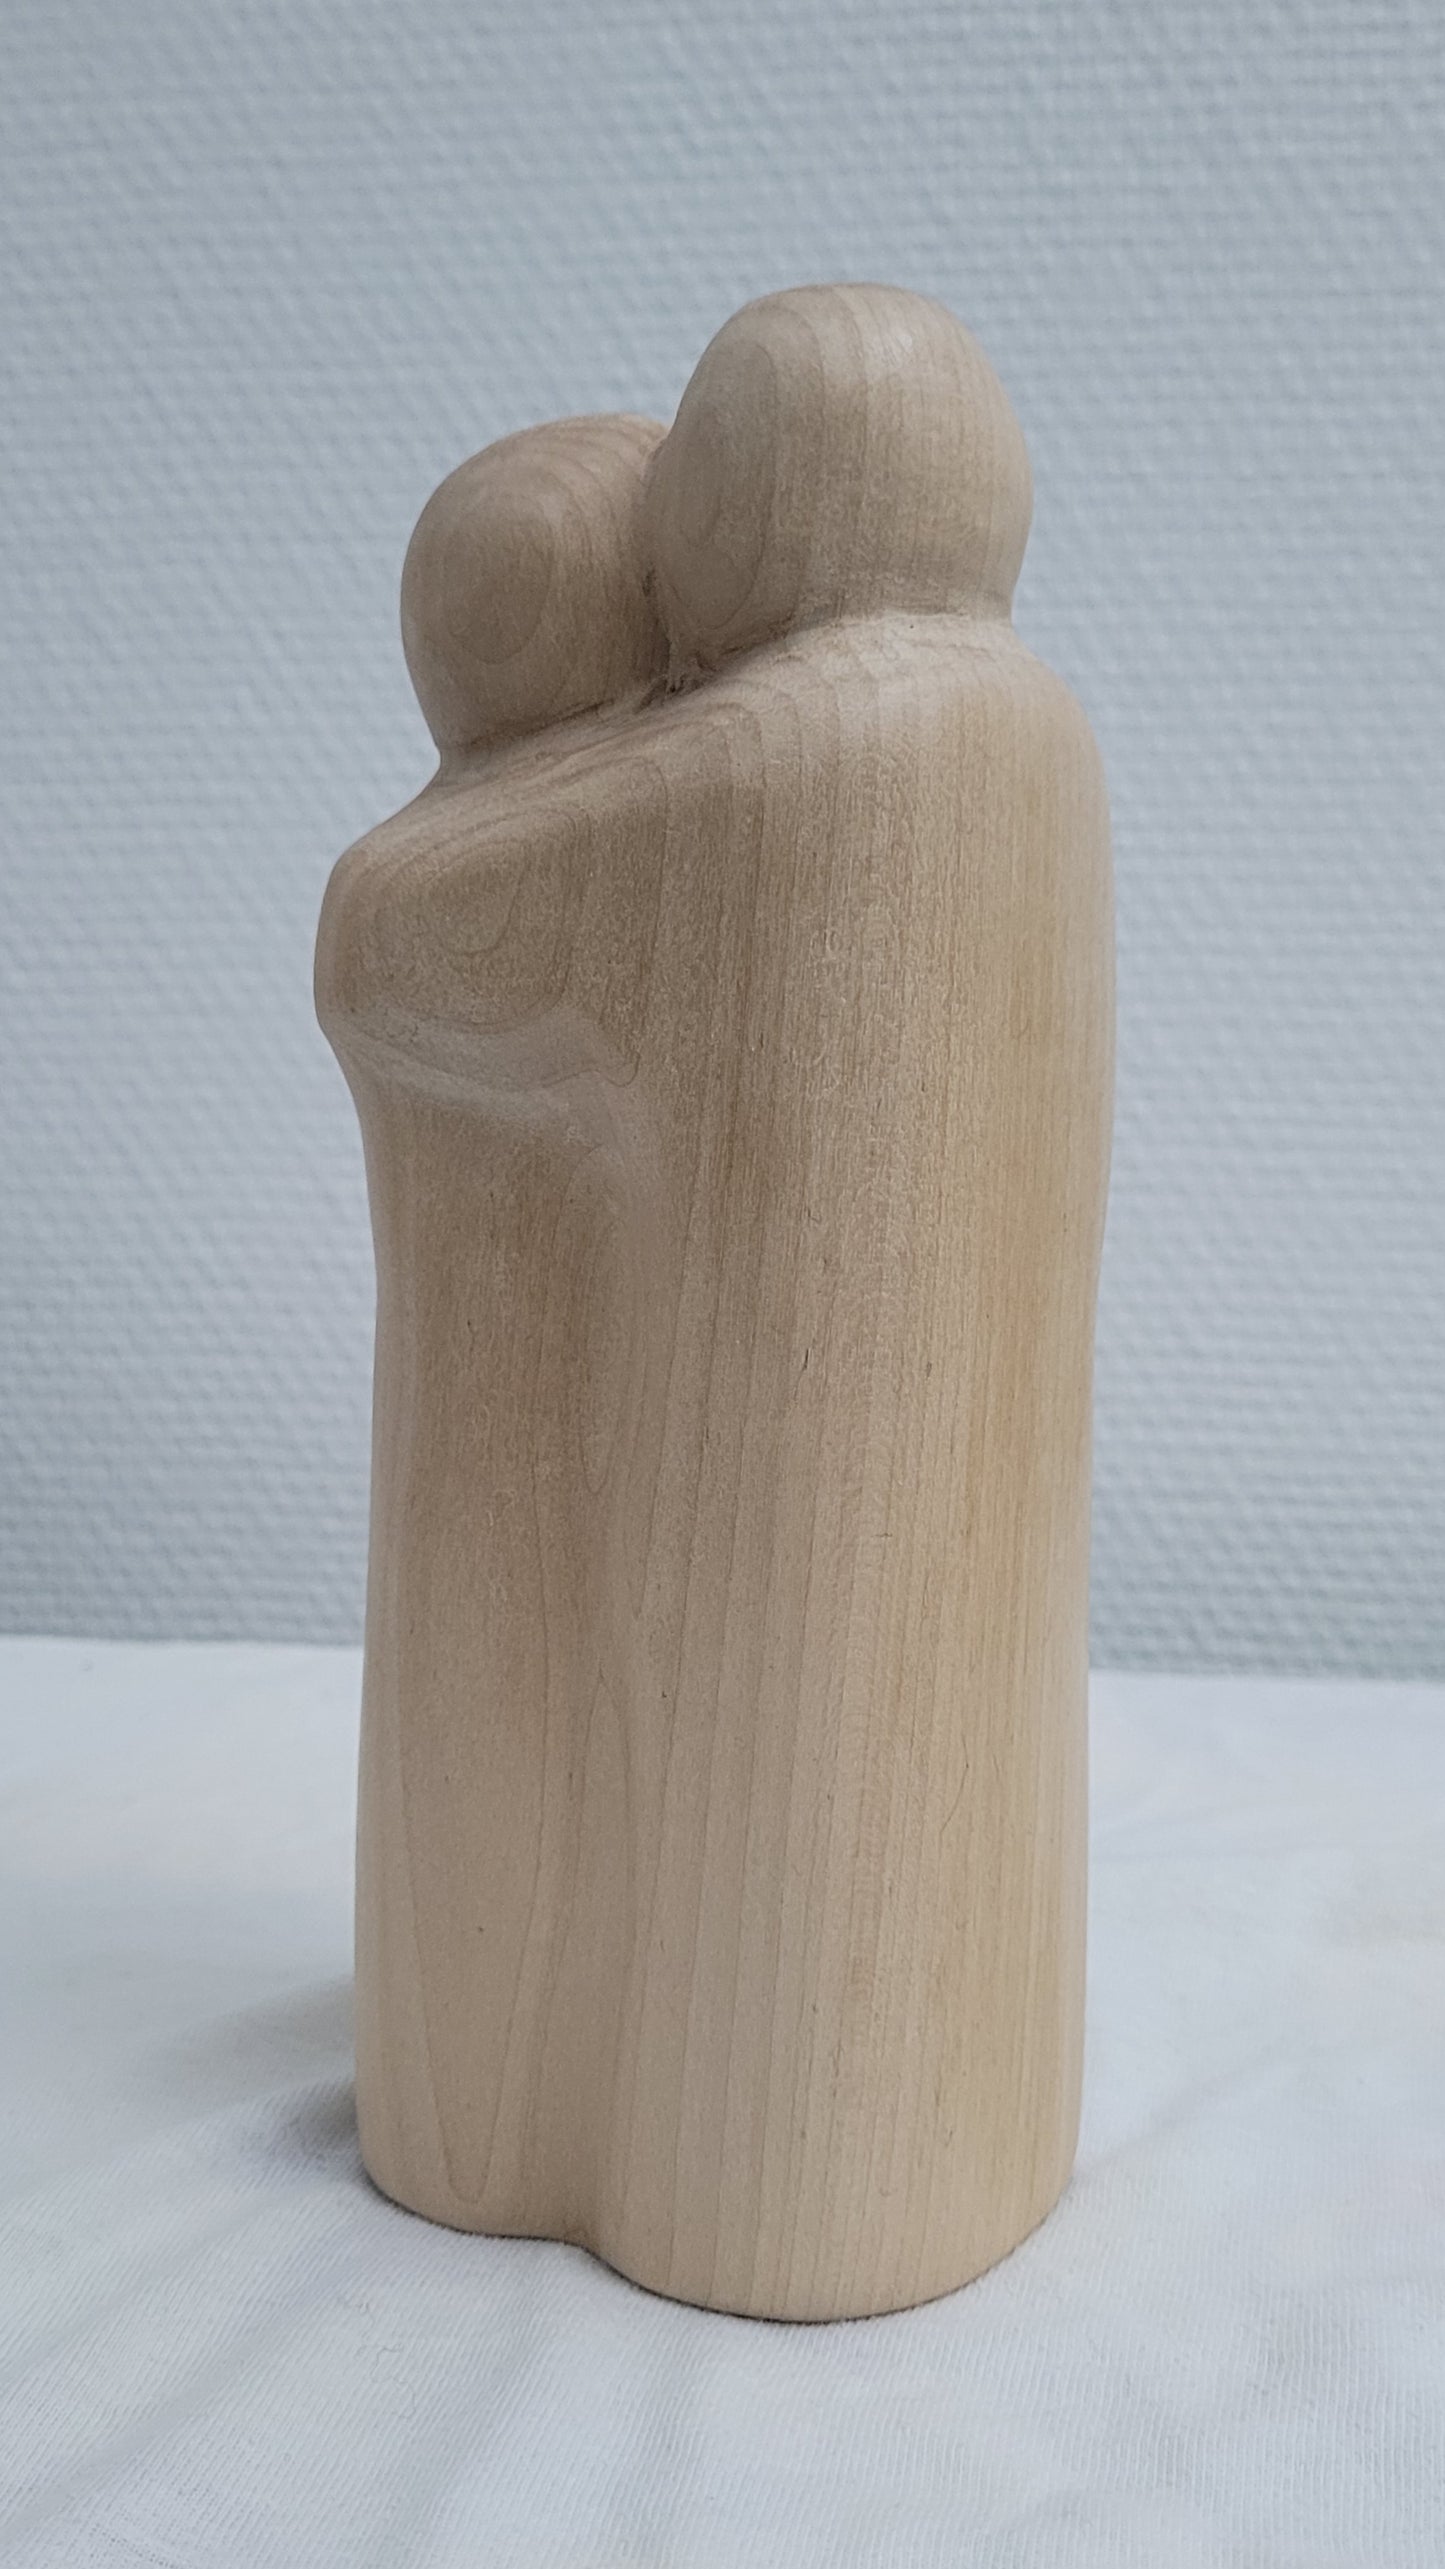 Les Amoureux, sculpture contemporaine en bois de tilleul, Eveline David-Valette